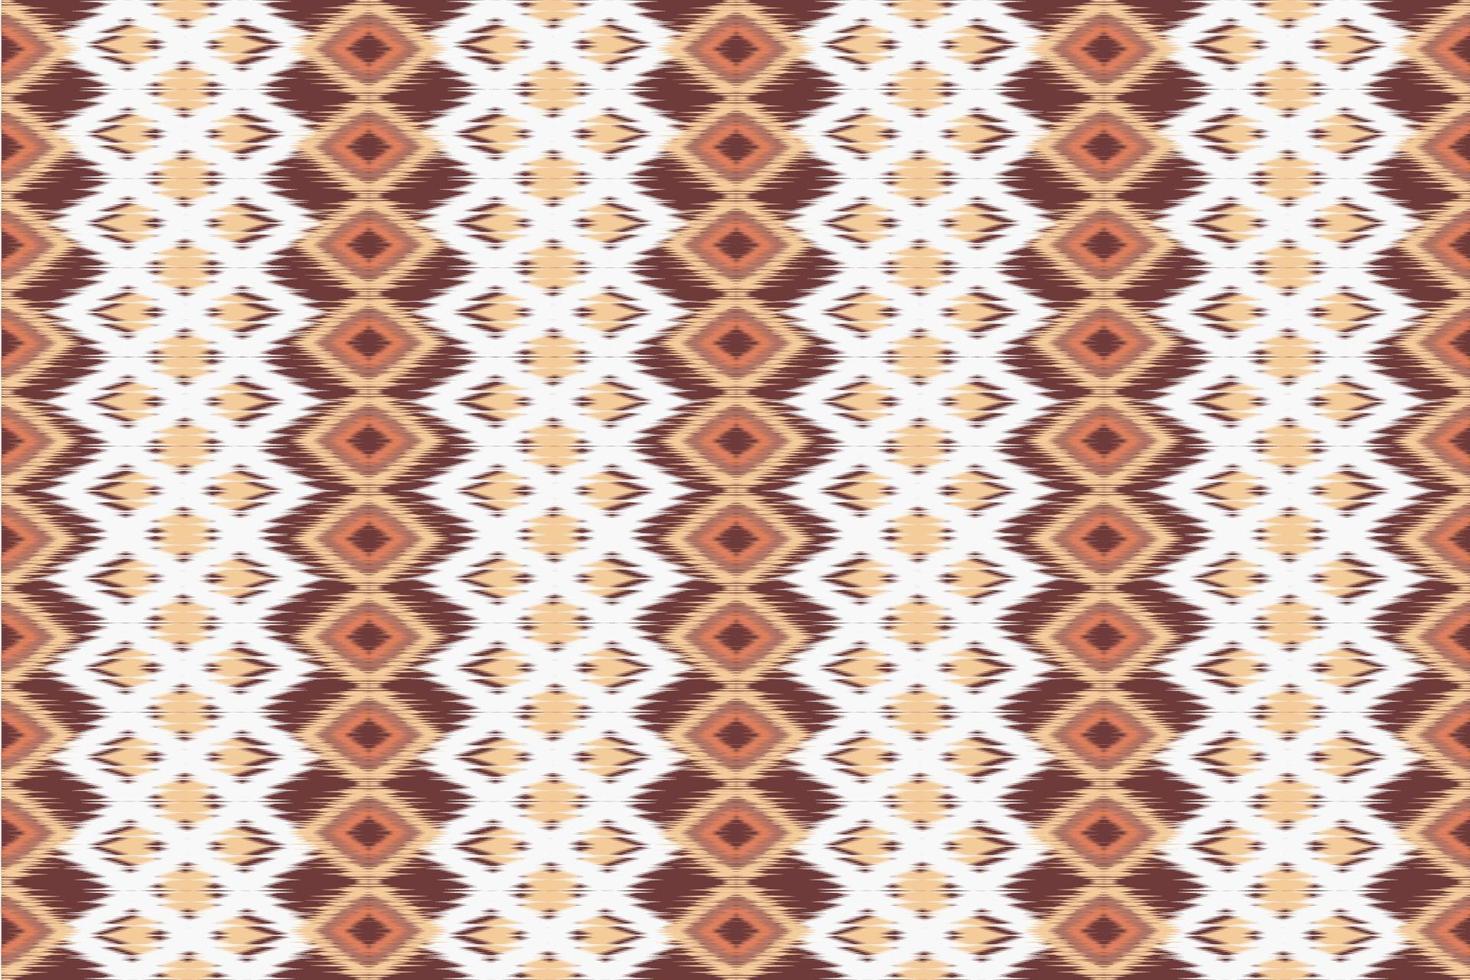 etnisk geometrisk sömlös mönster vektor. afrikansk arab amerikan aztec motiv mönster. vektor element designad för bakgrund, tapet, skriva ut, omslag, kakel, tyg mönster. vektor mönster.